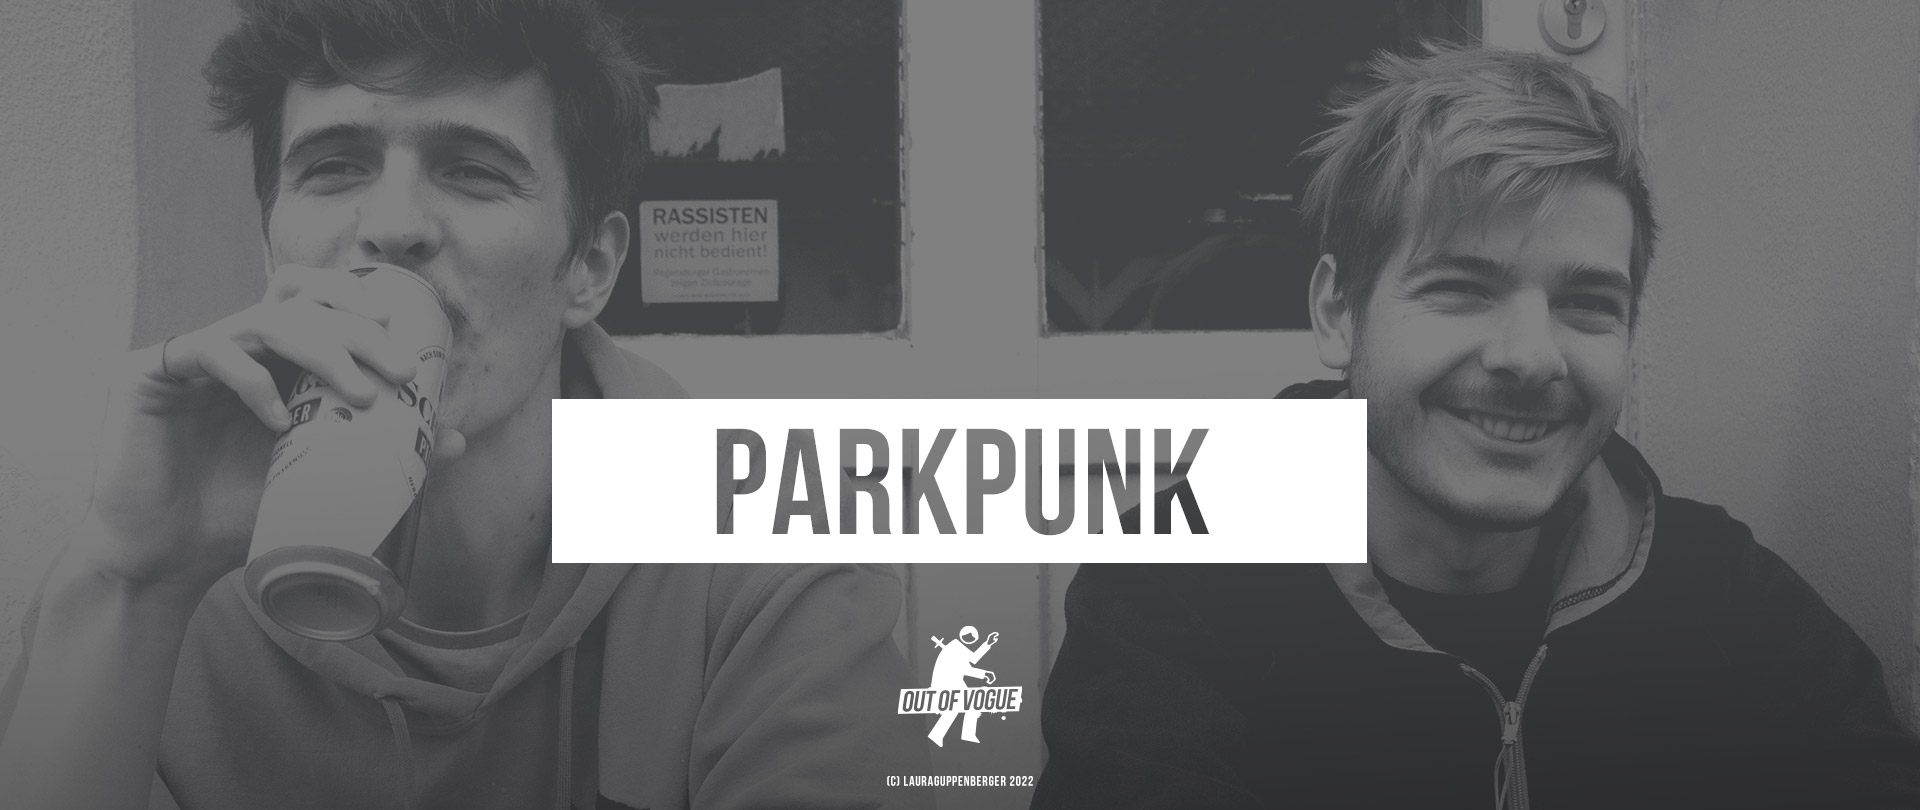 ParkPunk at OUT OF VOGUE SHOP / DE